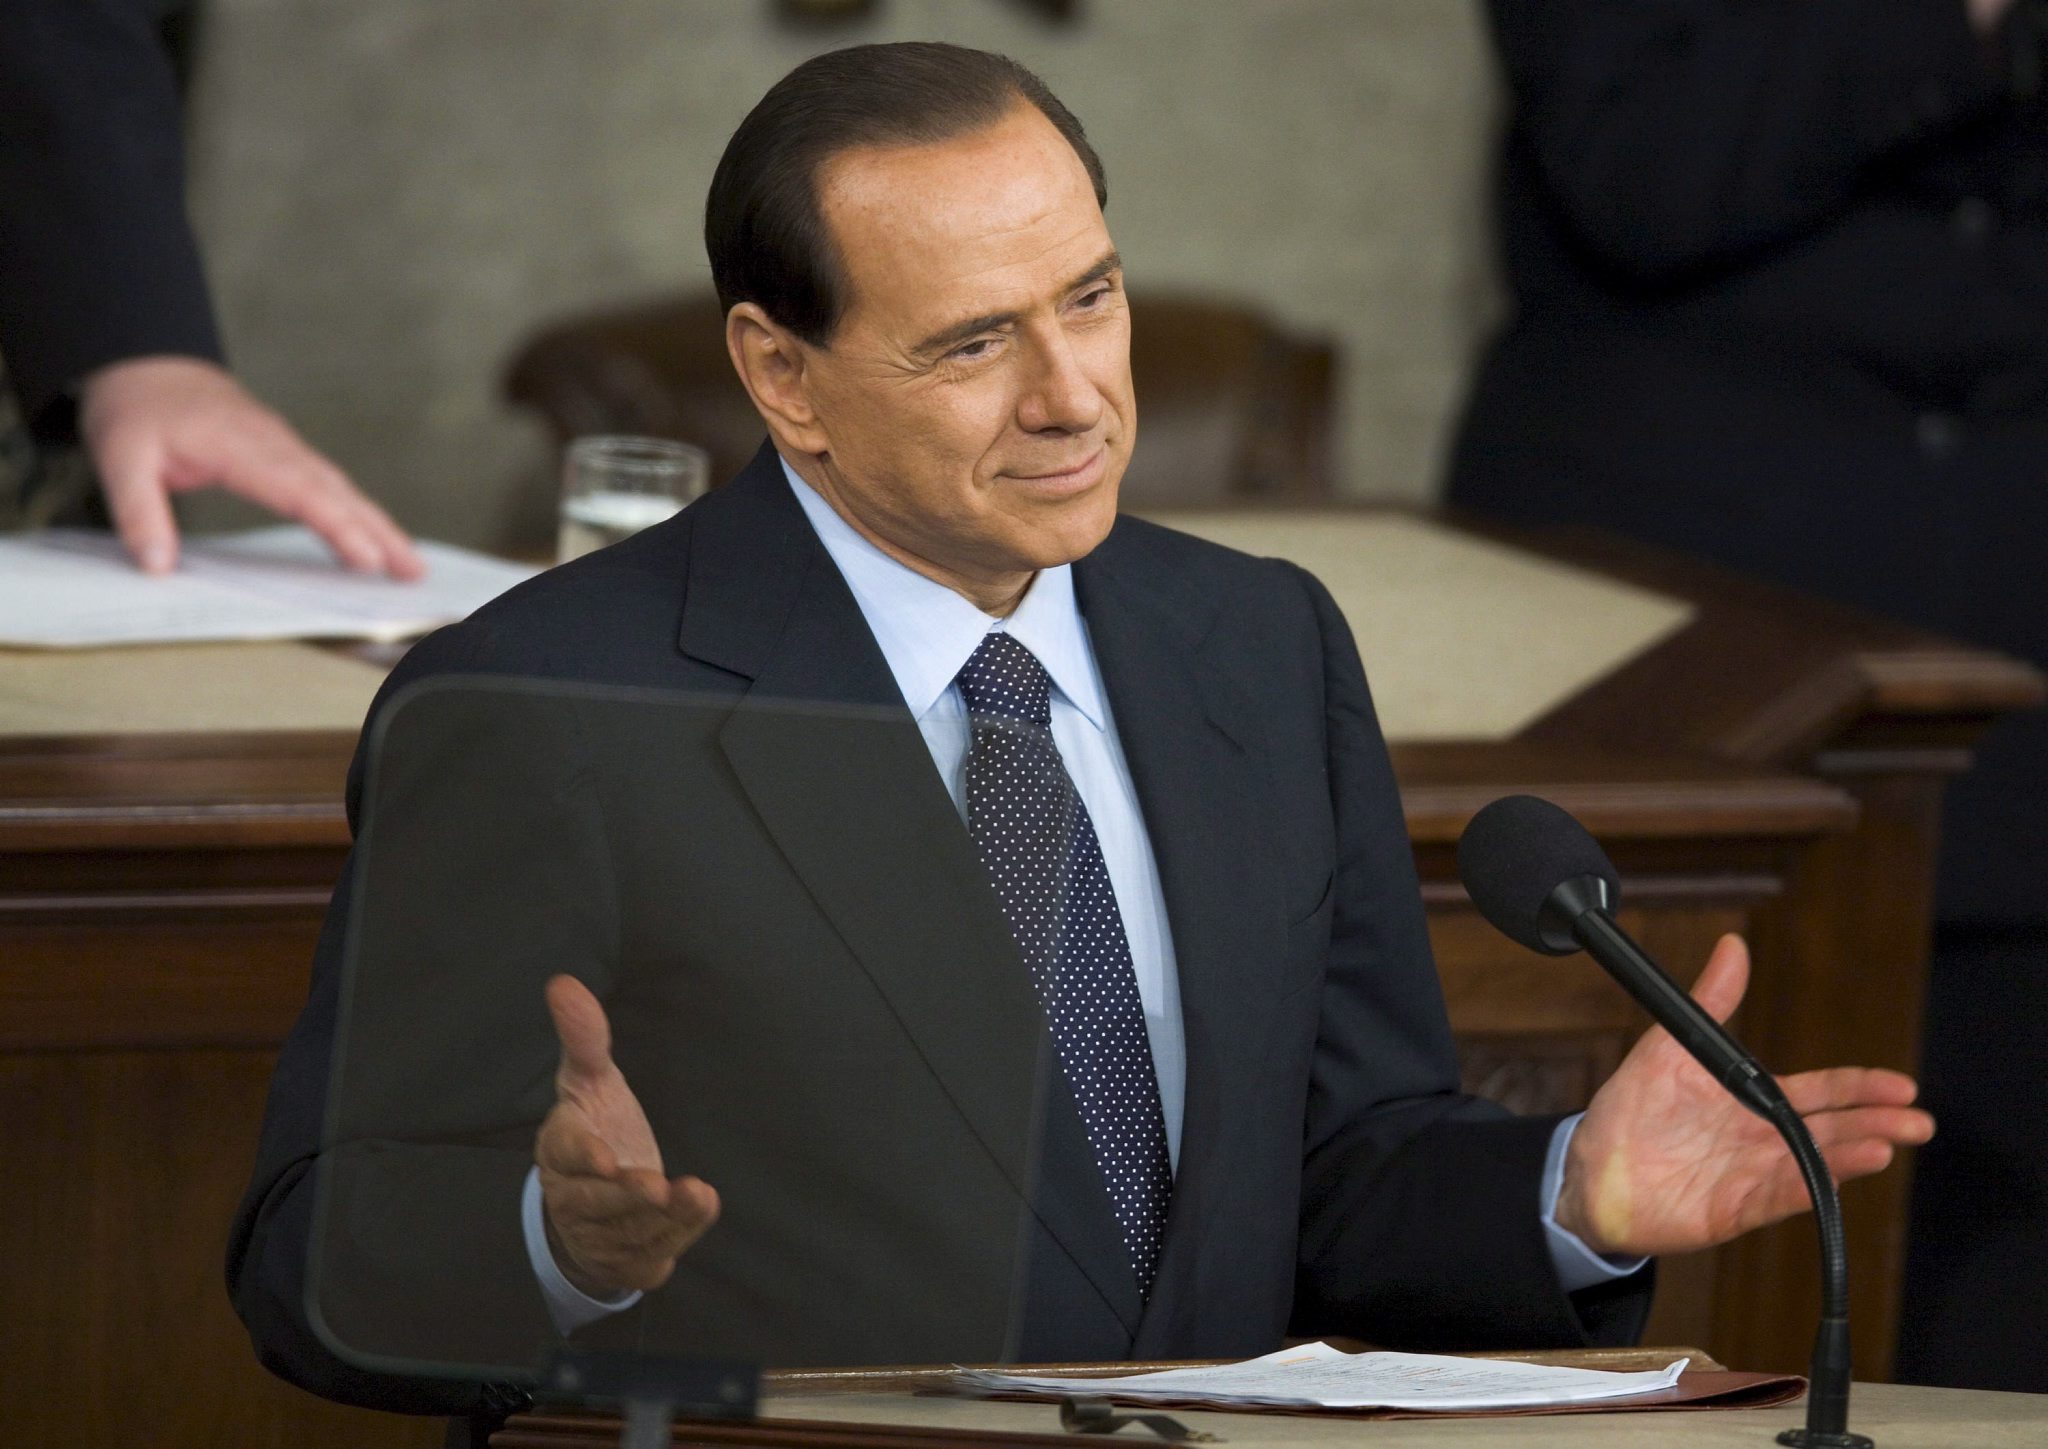 Investigan a Berlusconi por corrupción